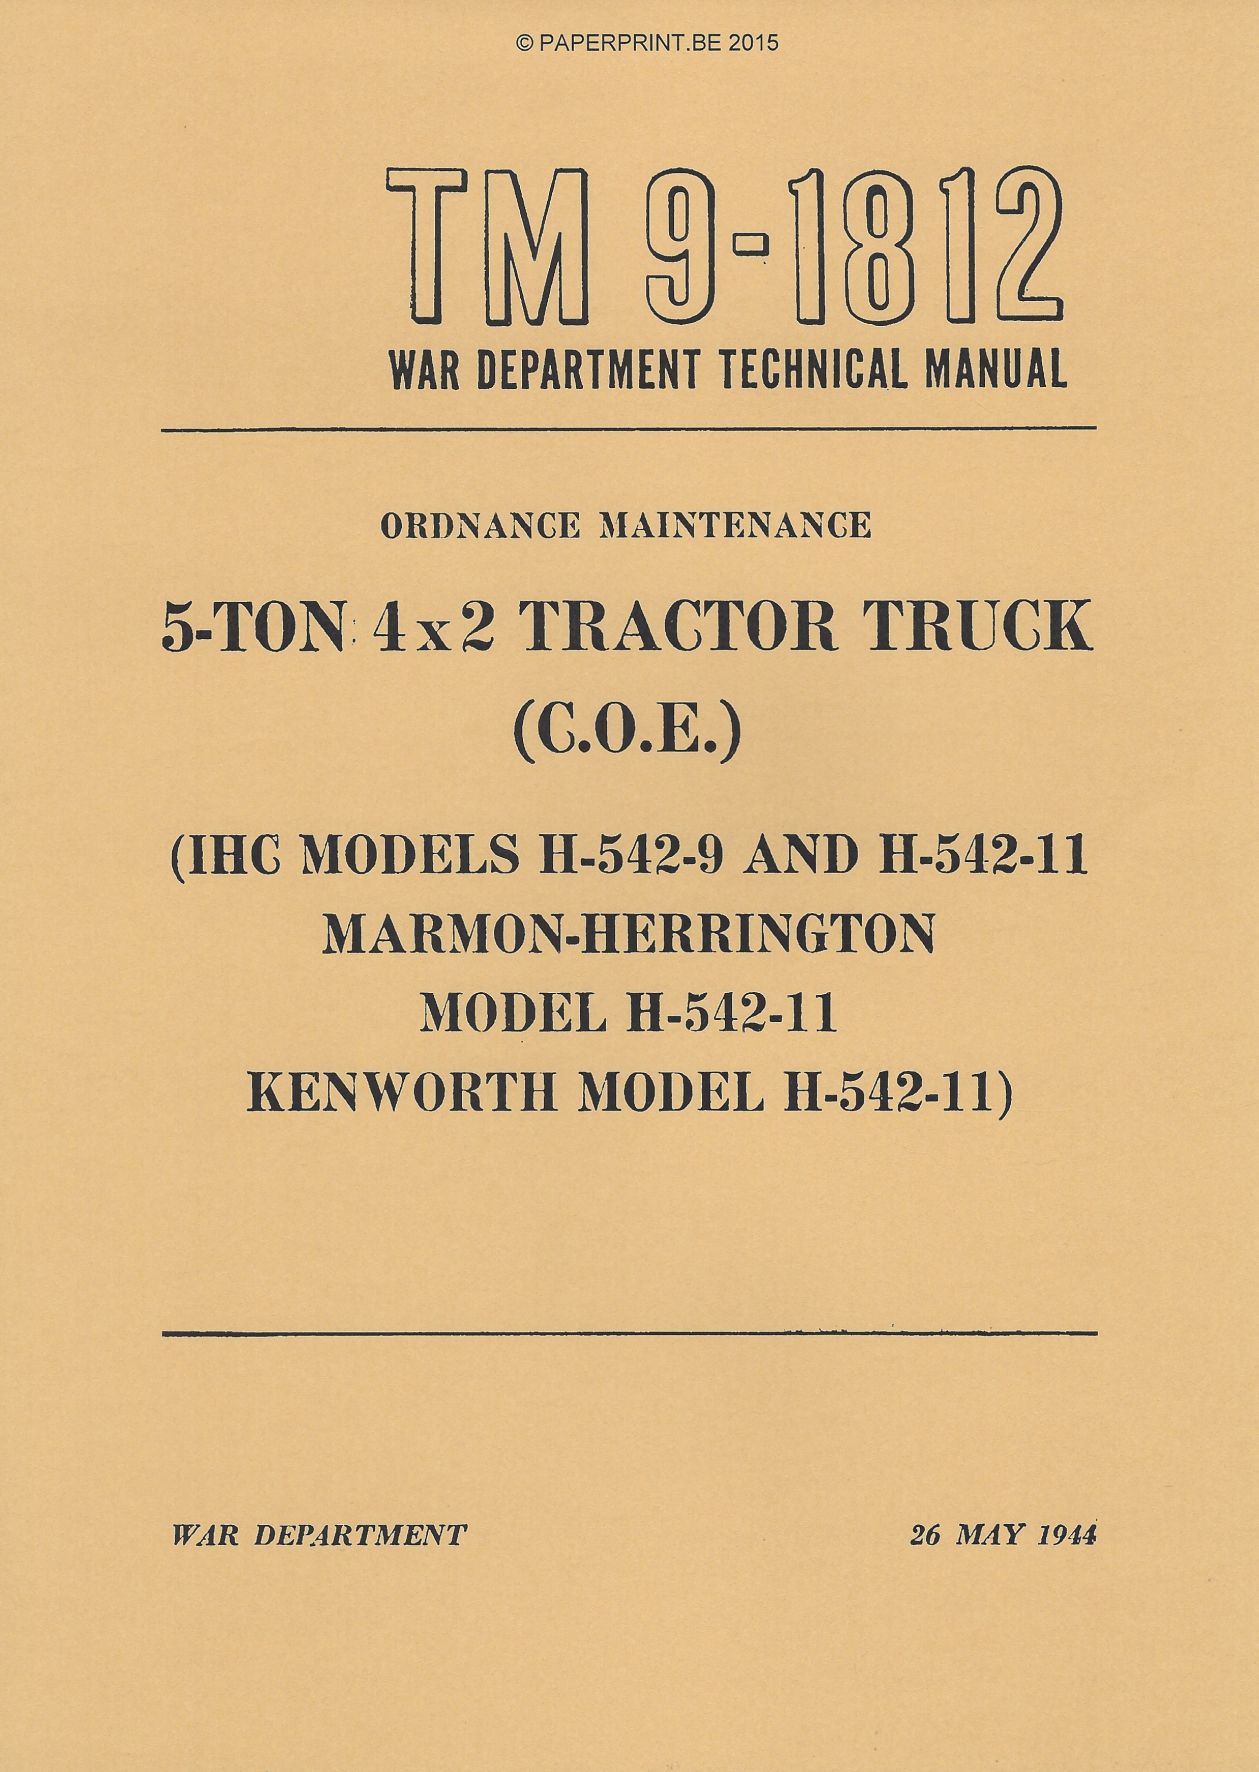 TM 9-1812 US 5-TON 4x2 TRACTOR TRUCK (C.O.E.)